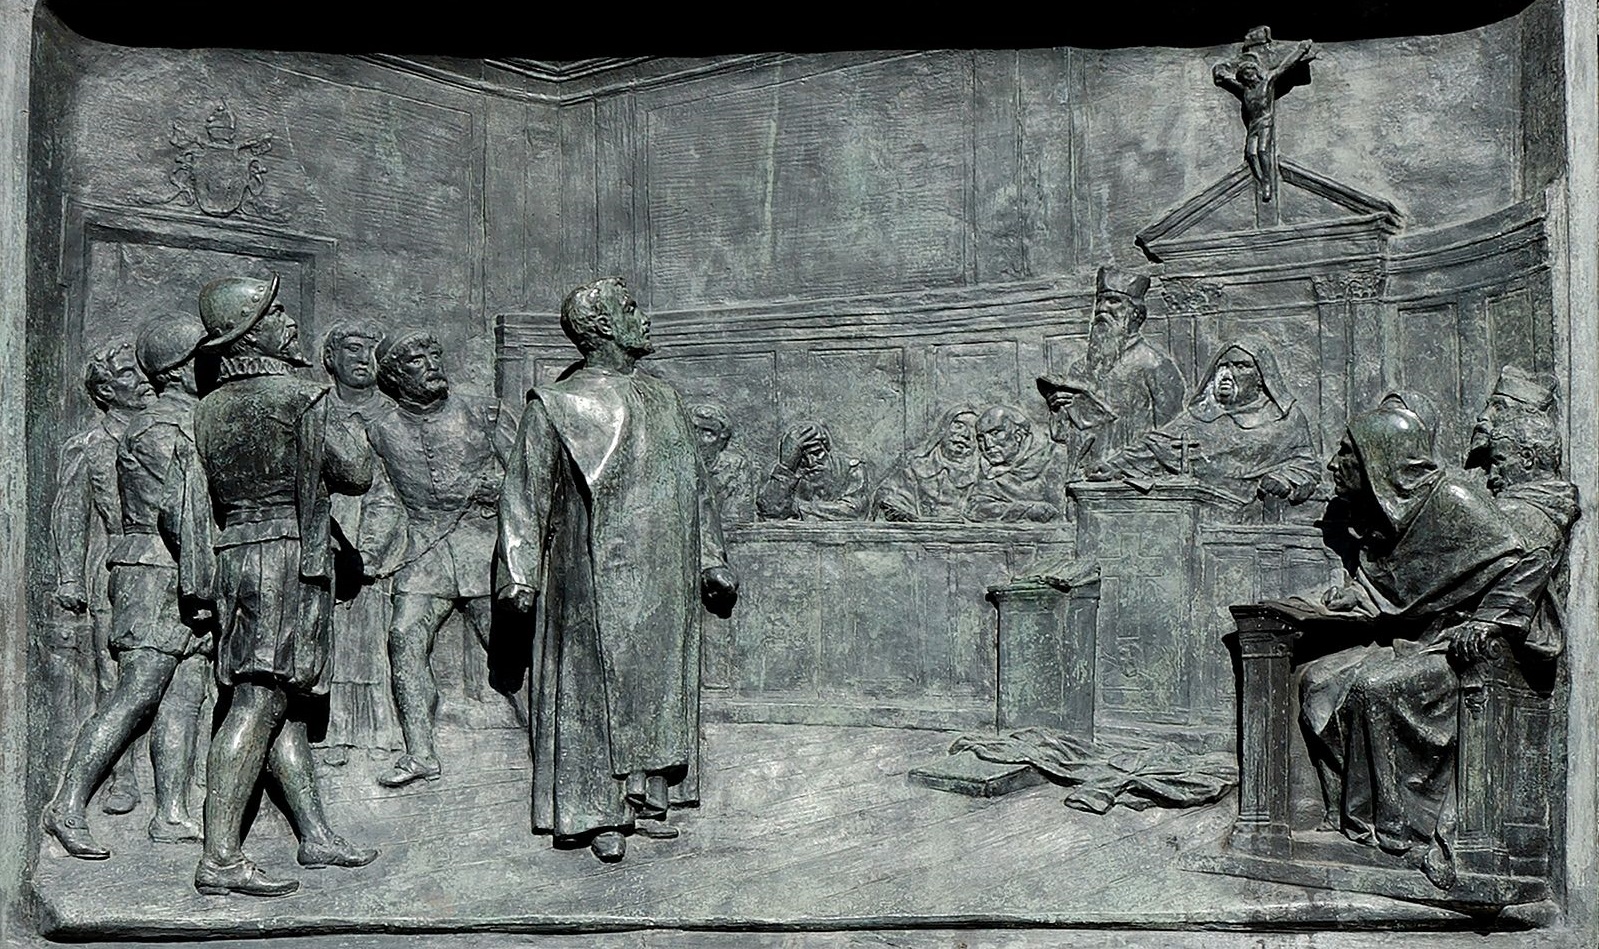 Джордано Бруно перед судом инквизиции. Барельеф на памятнике в Риме.